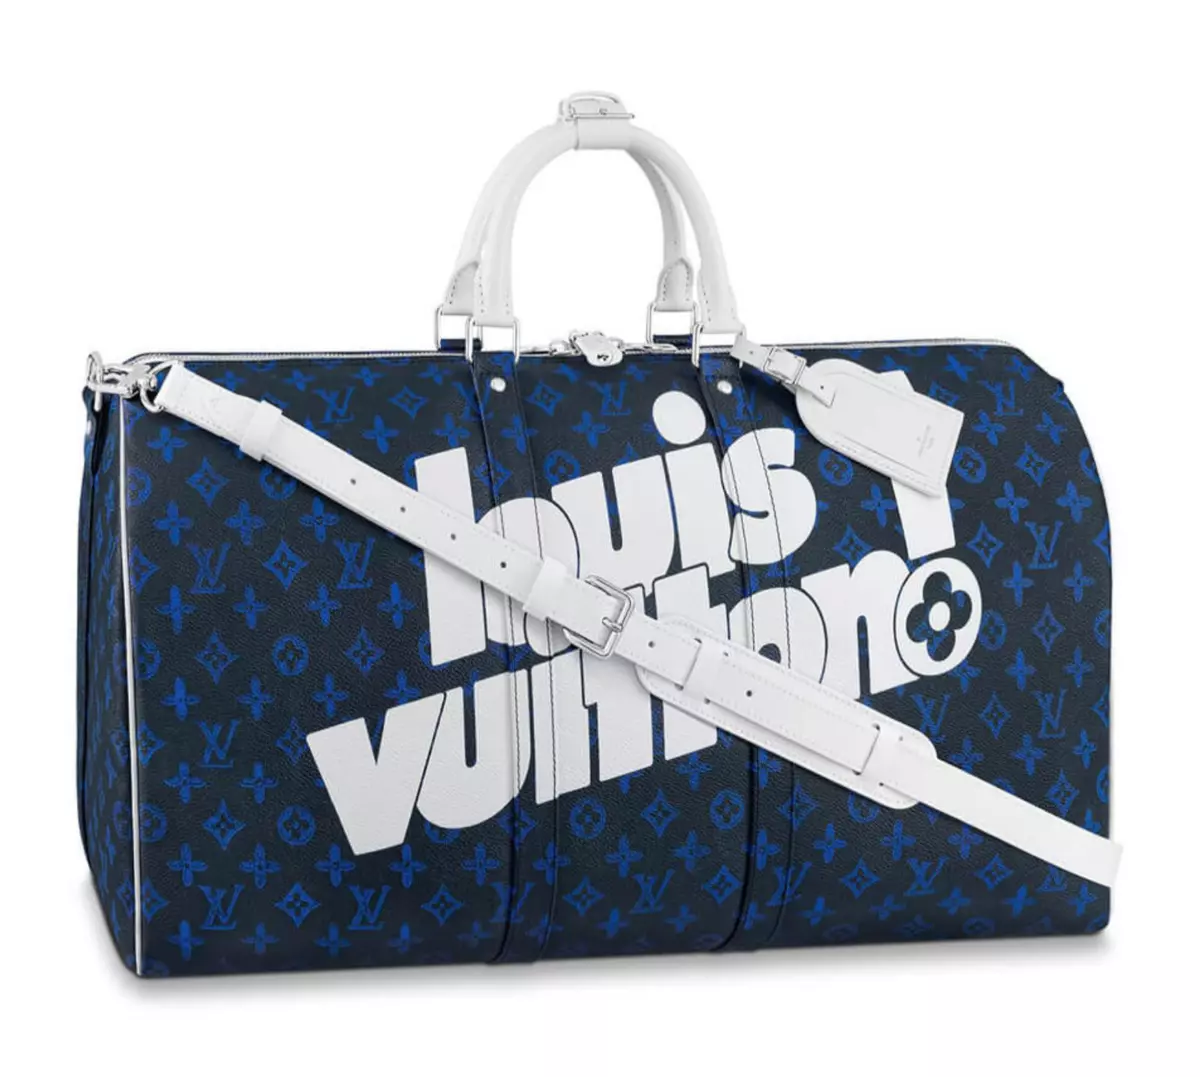 Blue on Blue Louis Vuitton Duffle Bag  Louis vuitton duffle bag, Bags, Louis  vuitton